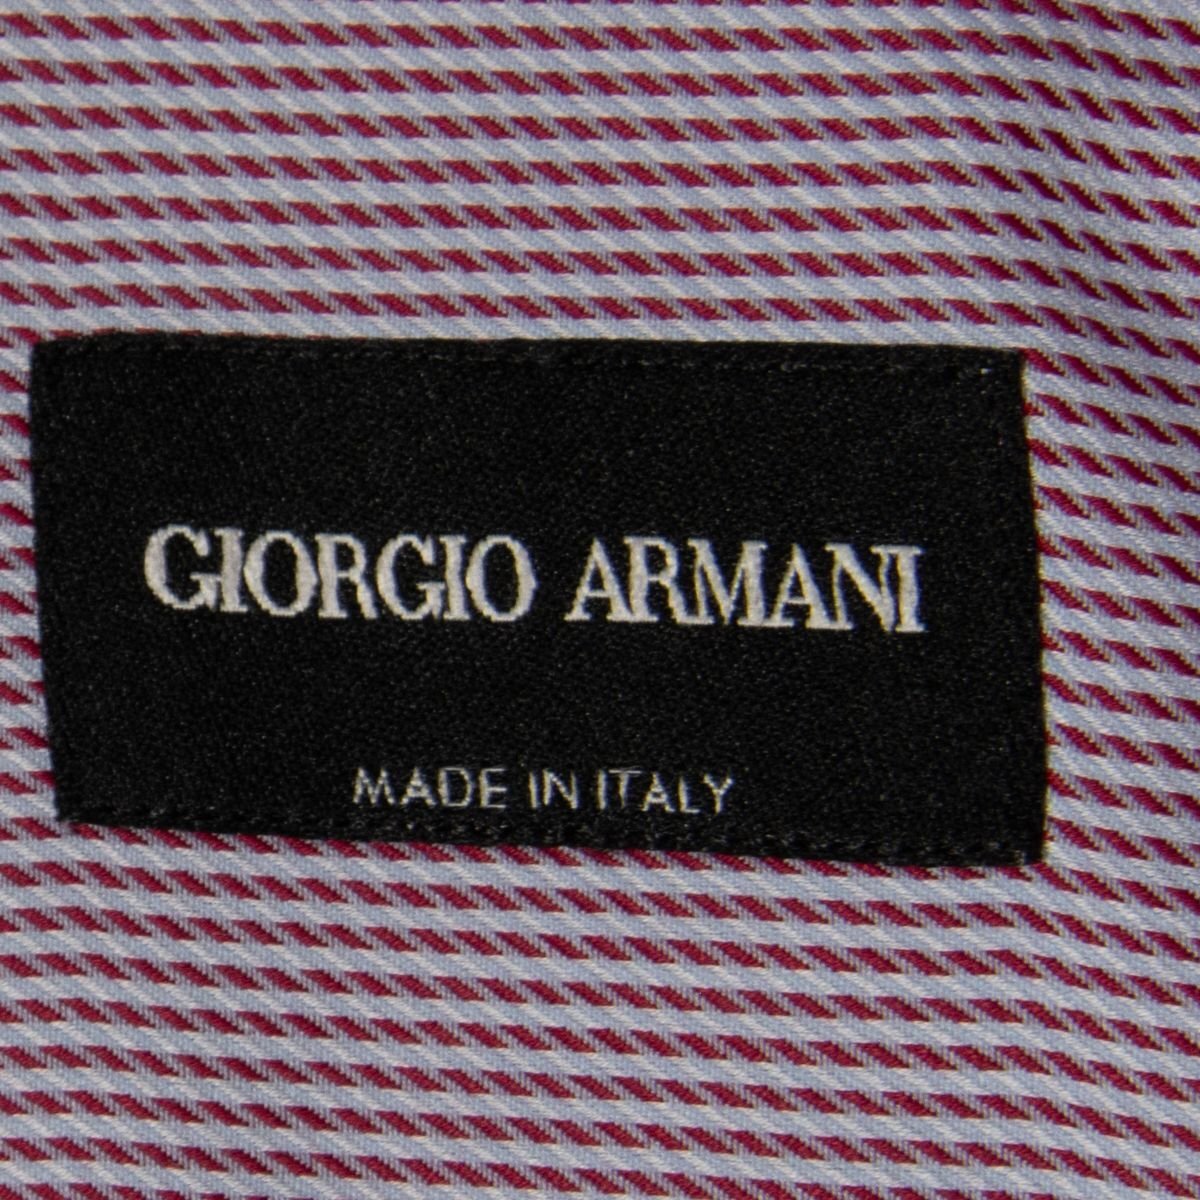 [1 иен старт ]GIORGIO ARMANIjoru geo Armani рубашка с длинным рукавом tops хлопок 100% высокий бренд Basic общий рисунок красный 43 Италия производства 